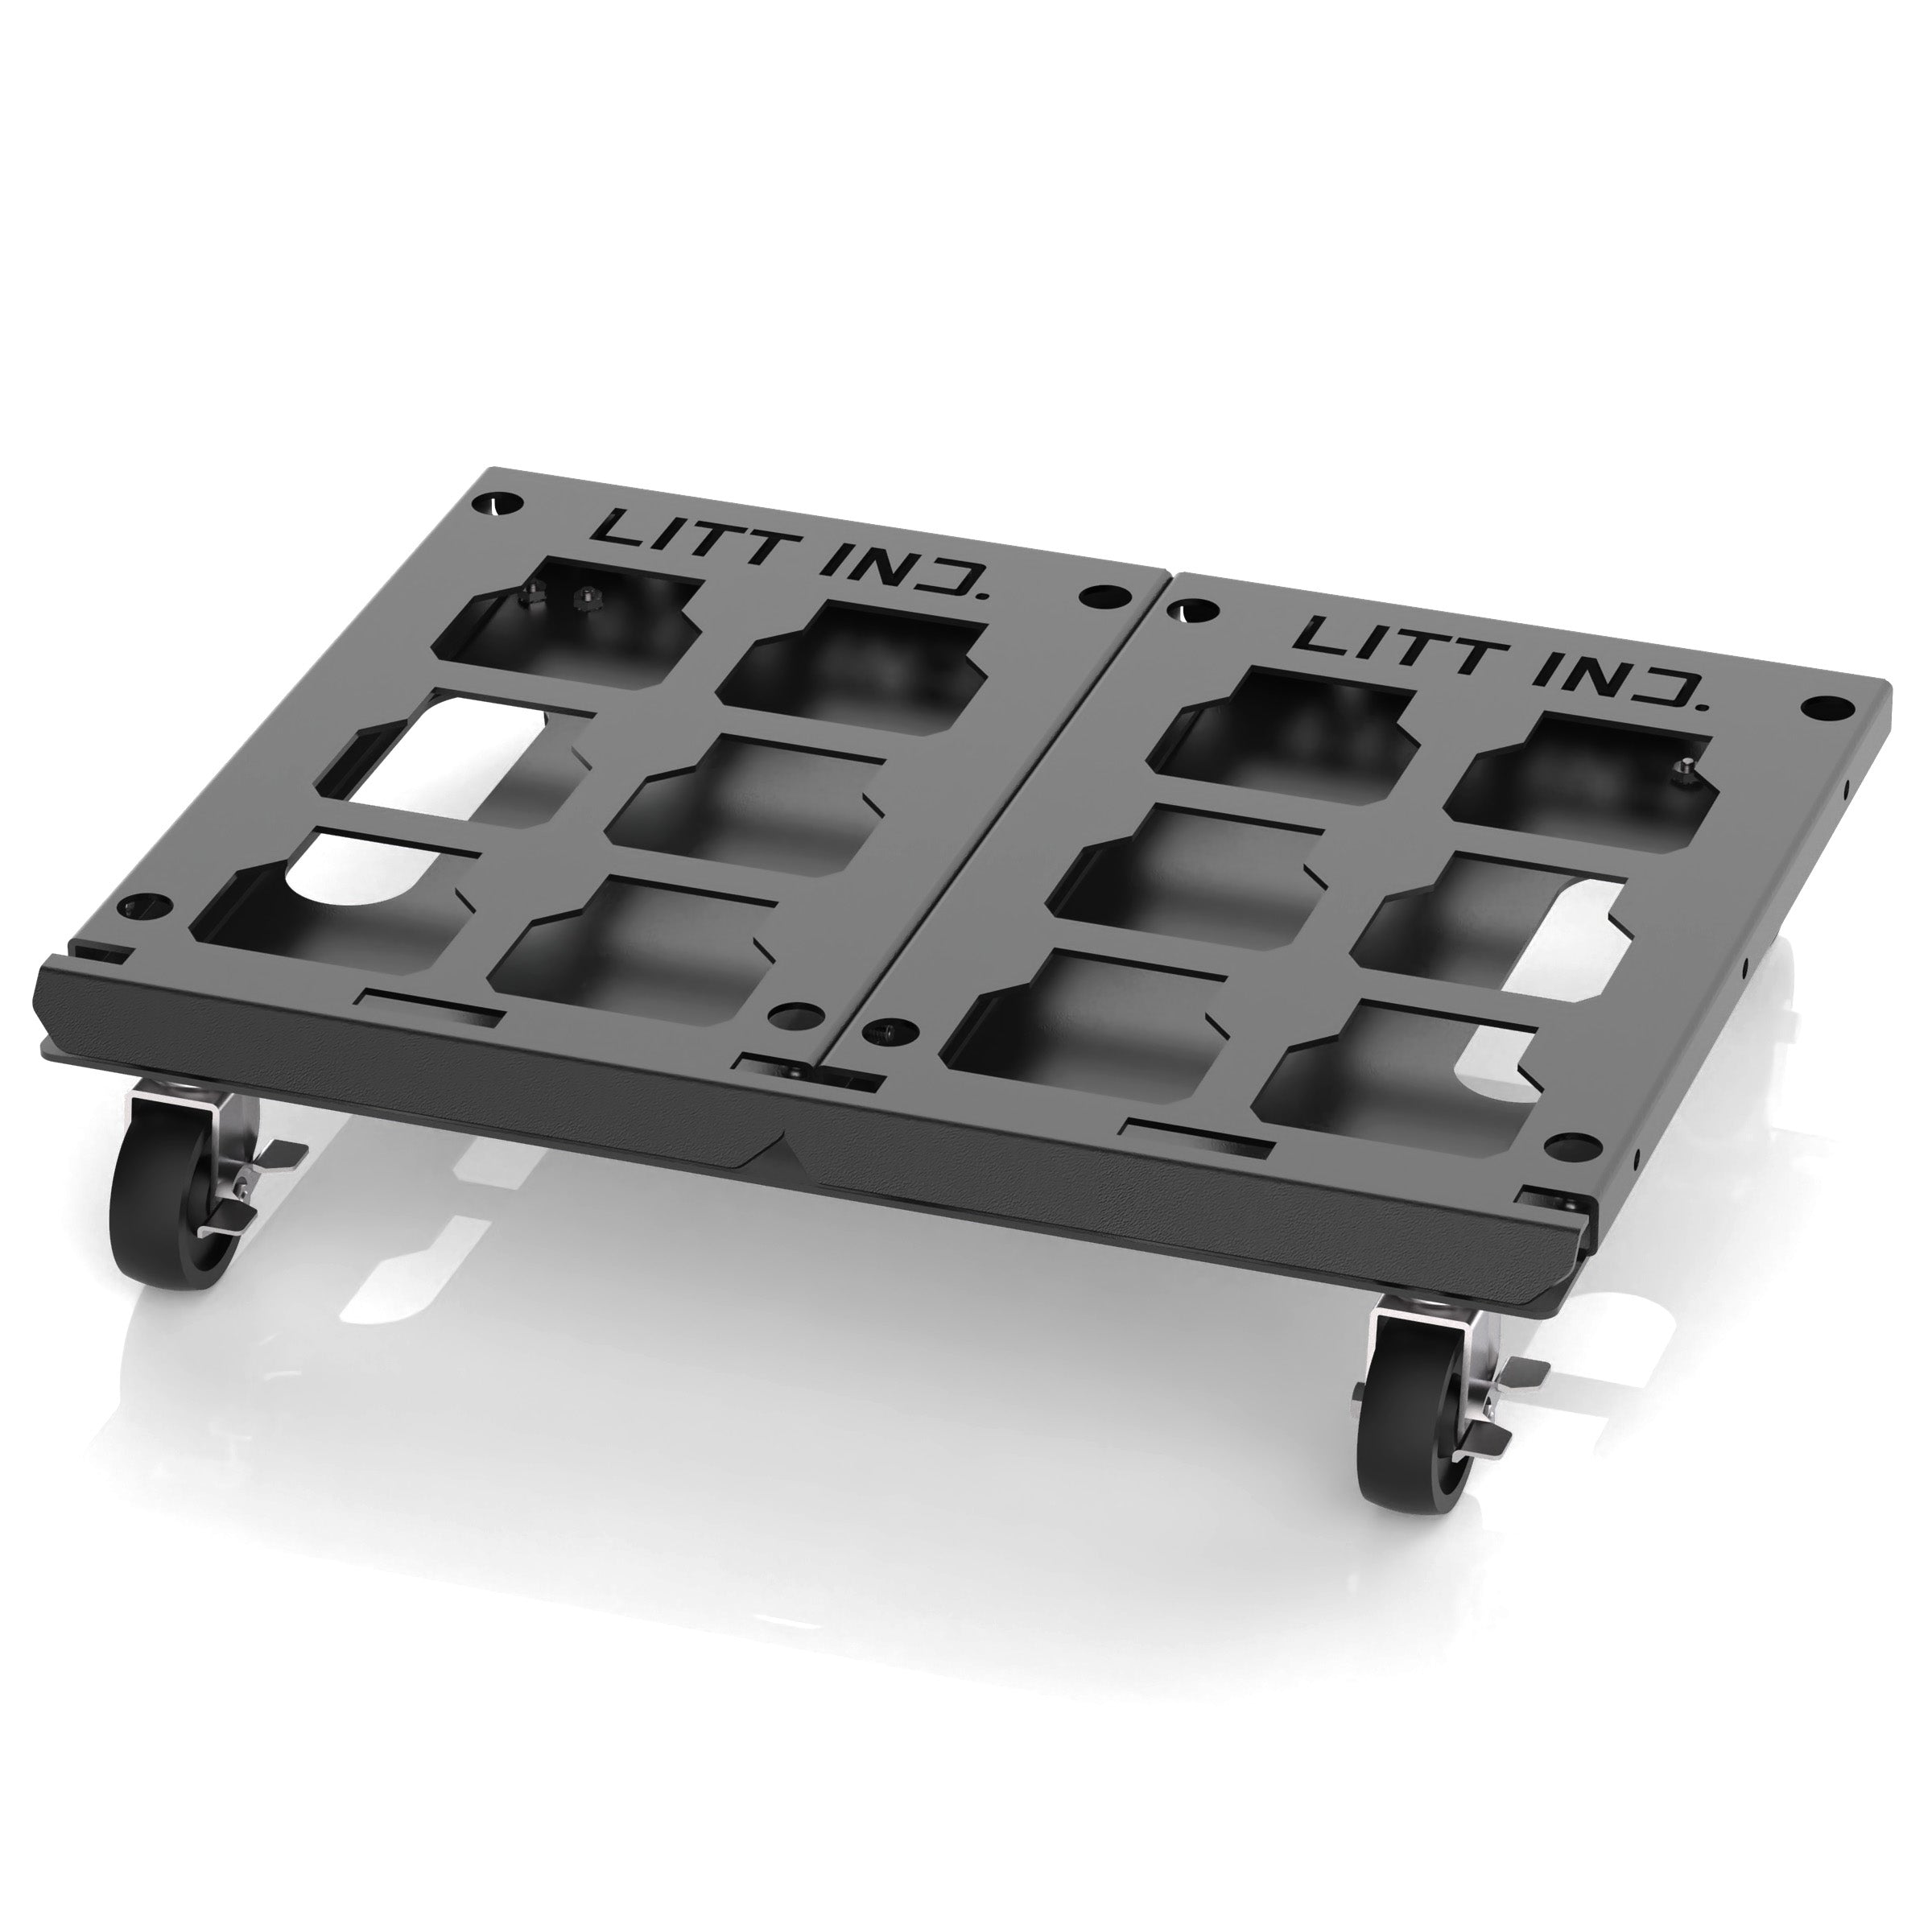 Litt Industries modular packout system roller cart